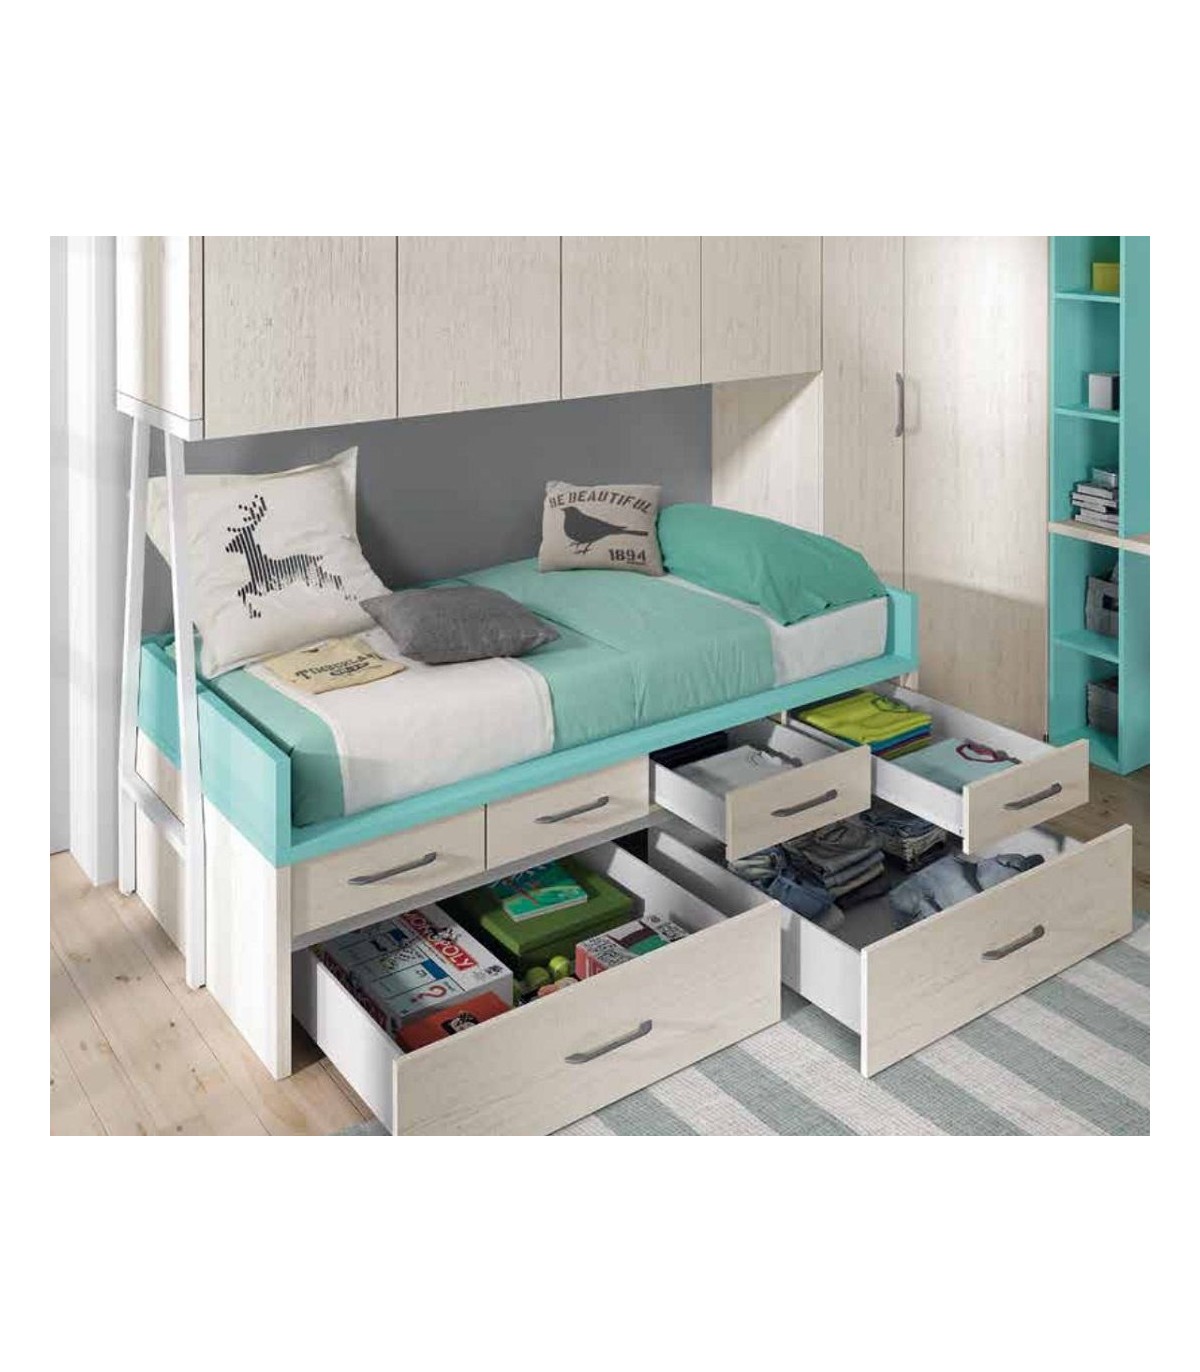 Dormitorio Juvenil con cama nido, contenedores, cajoneras